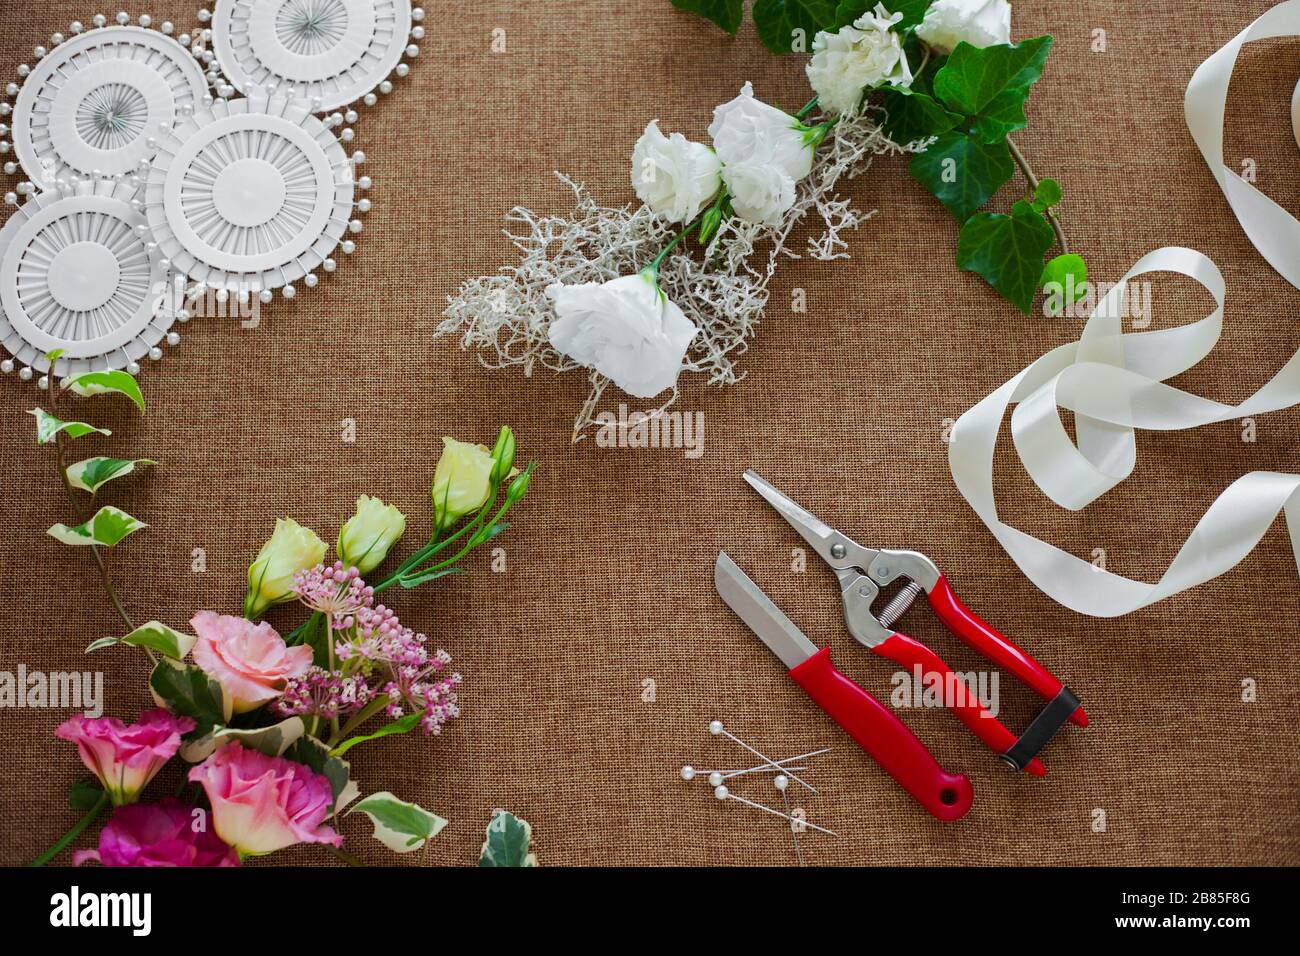 Floristen-Arbeitsplatz. Werkzeuge und Zubehör. Blumen, Pflaugen, Messer, Stifte Stockfoto